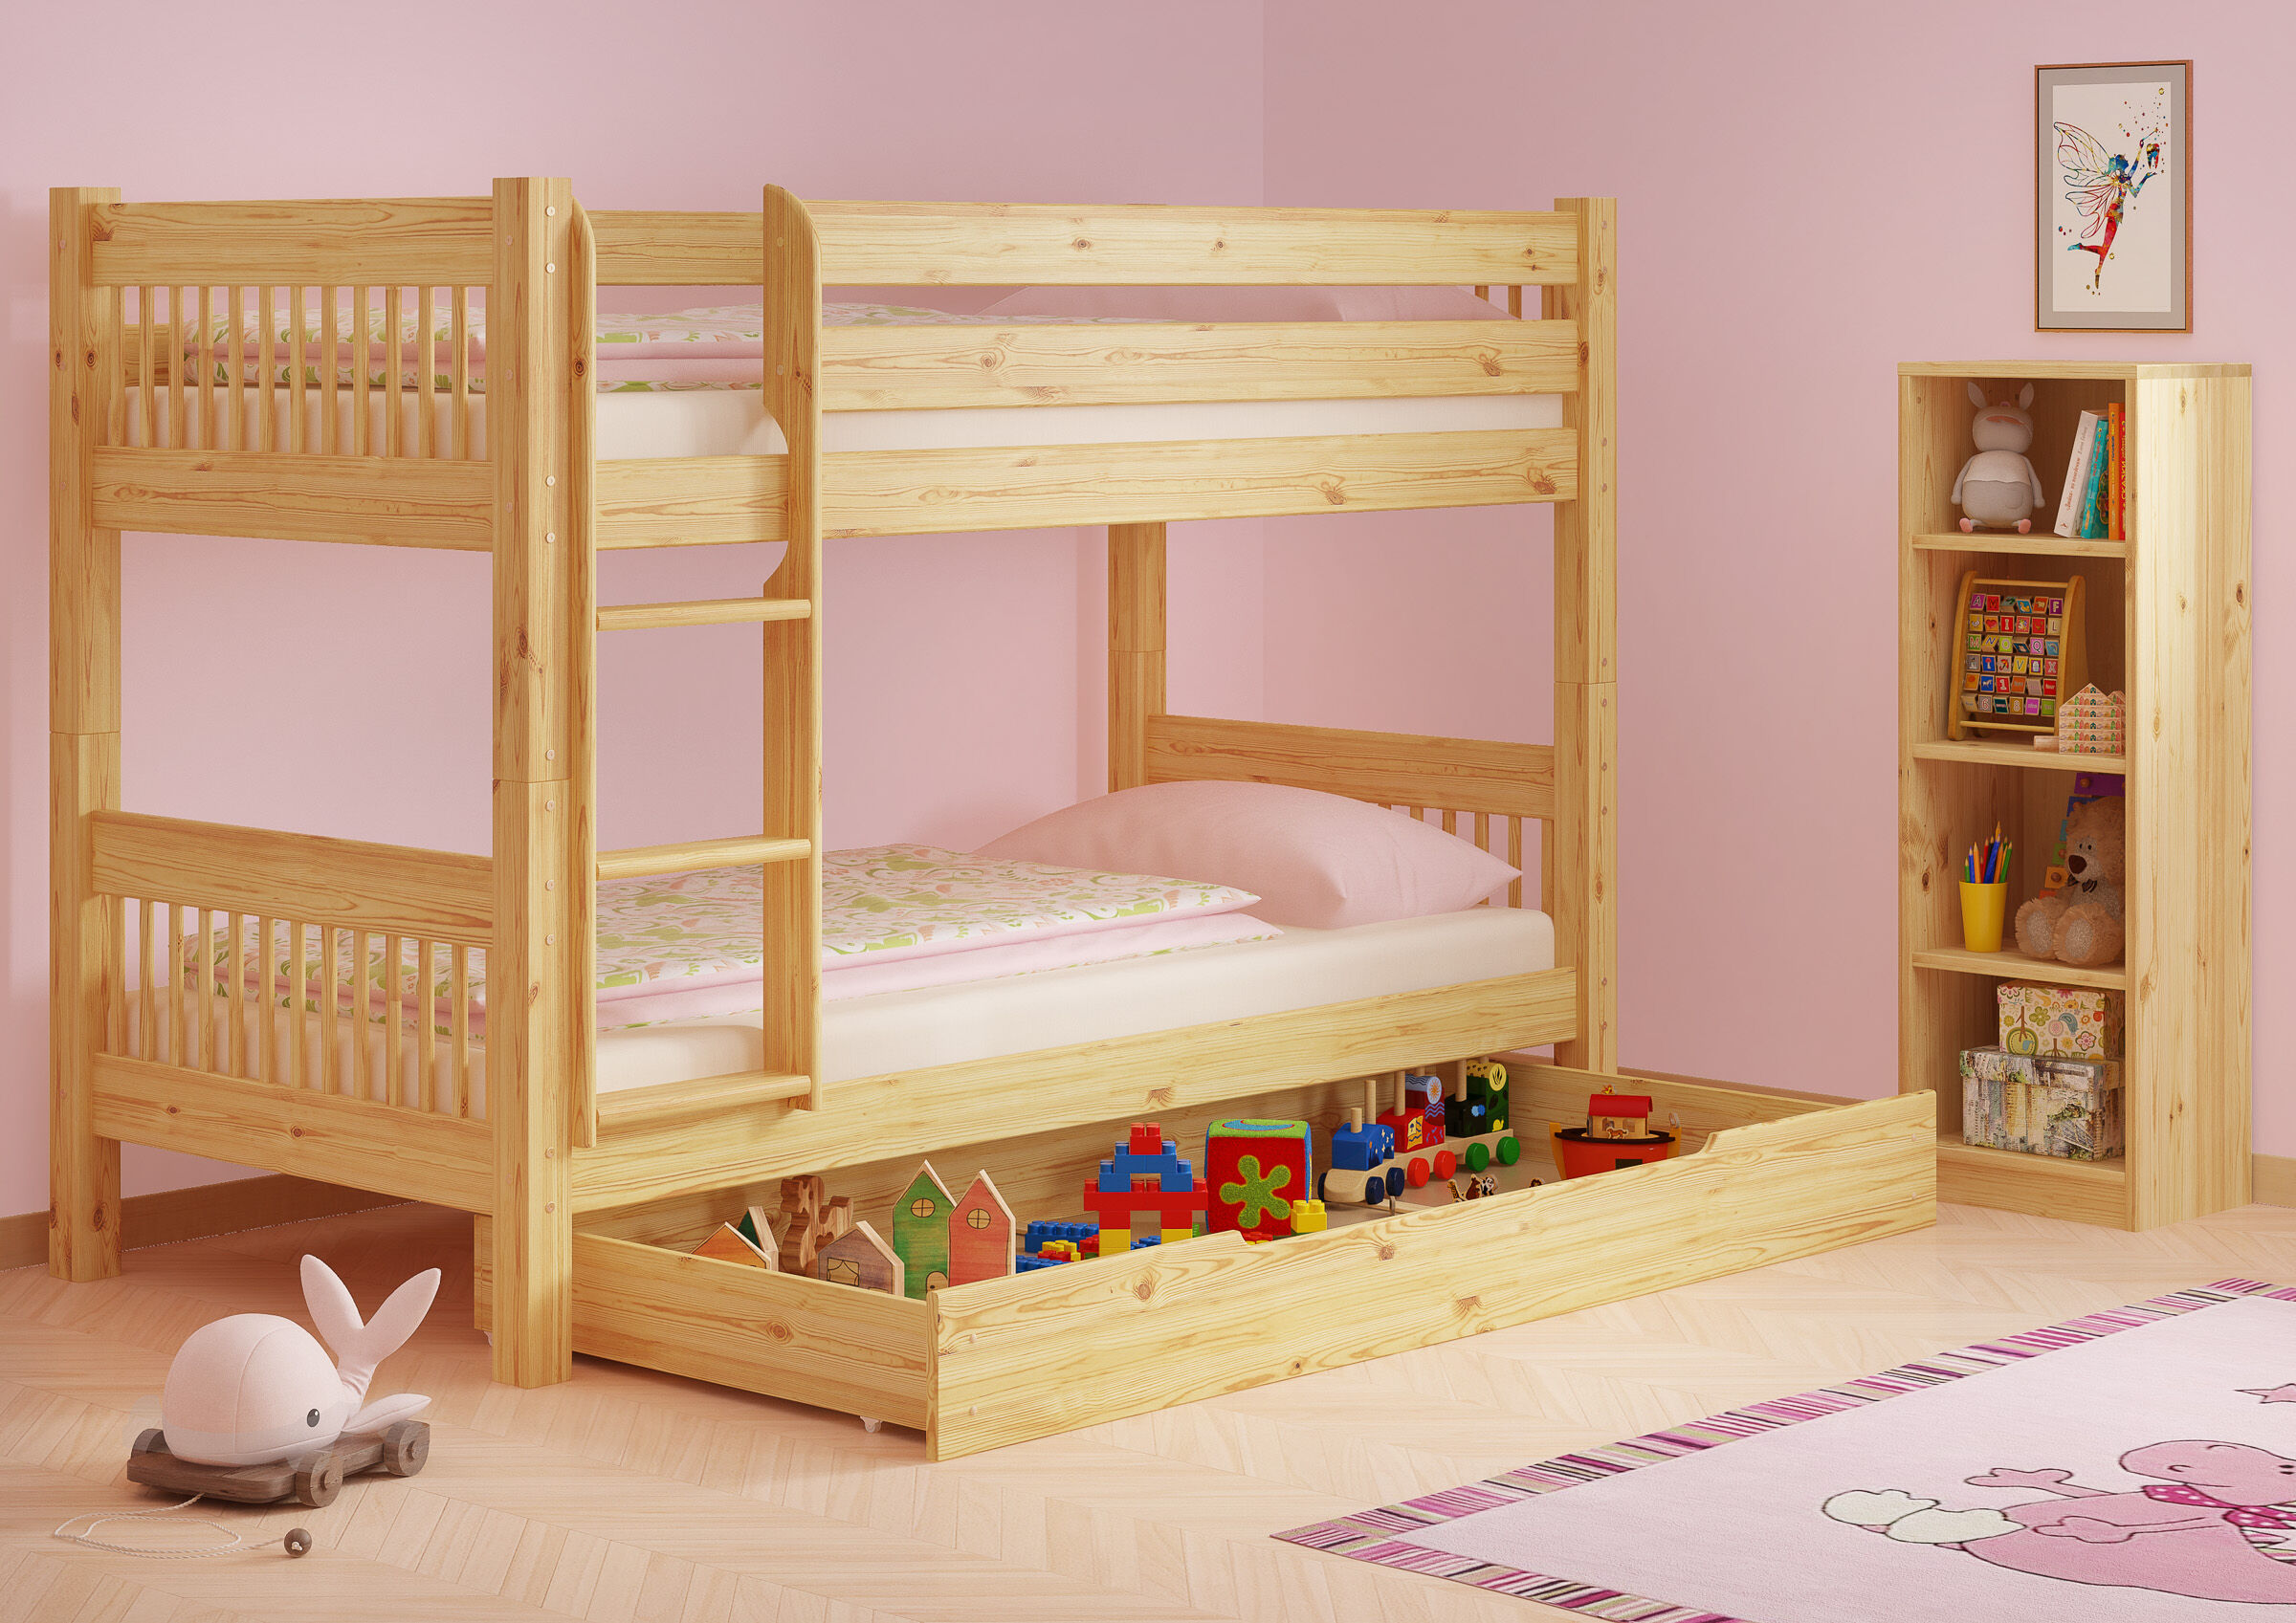 Kinderstockbett aus Massivholz mit wählbarem Zubehör, Liegefläche 90x200 V-60.12-09Ni70